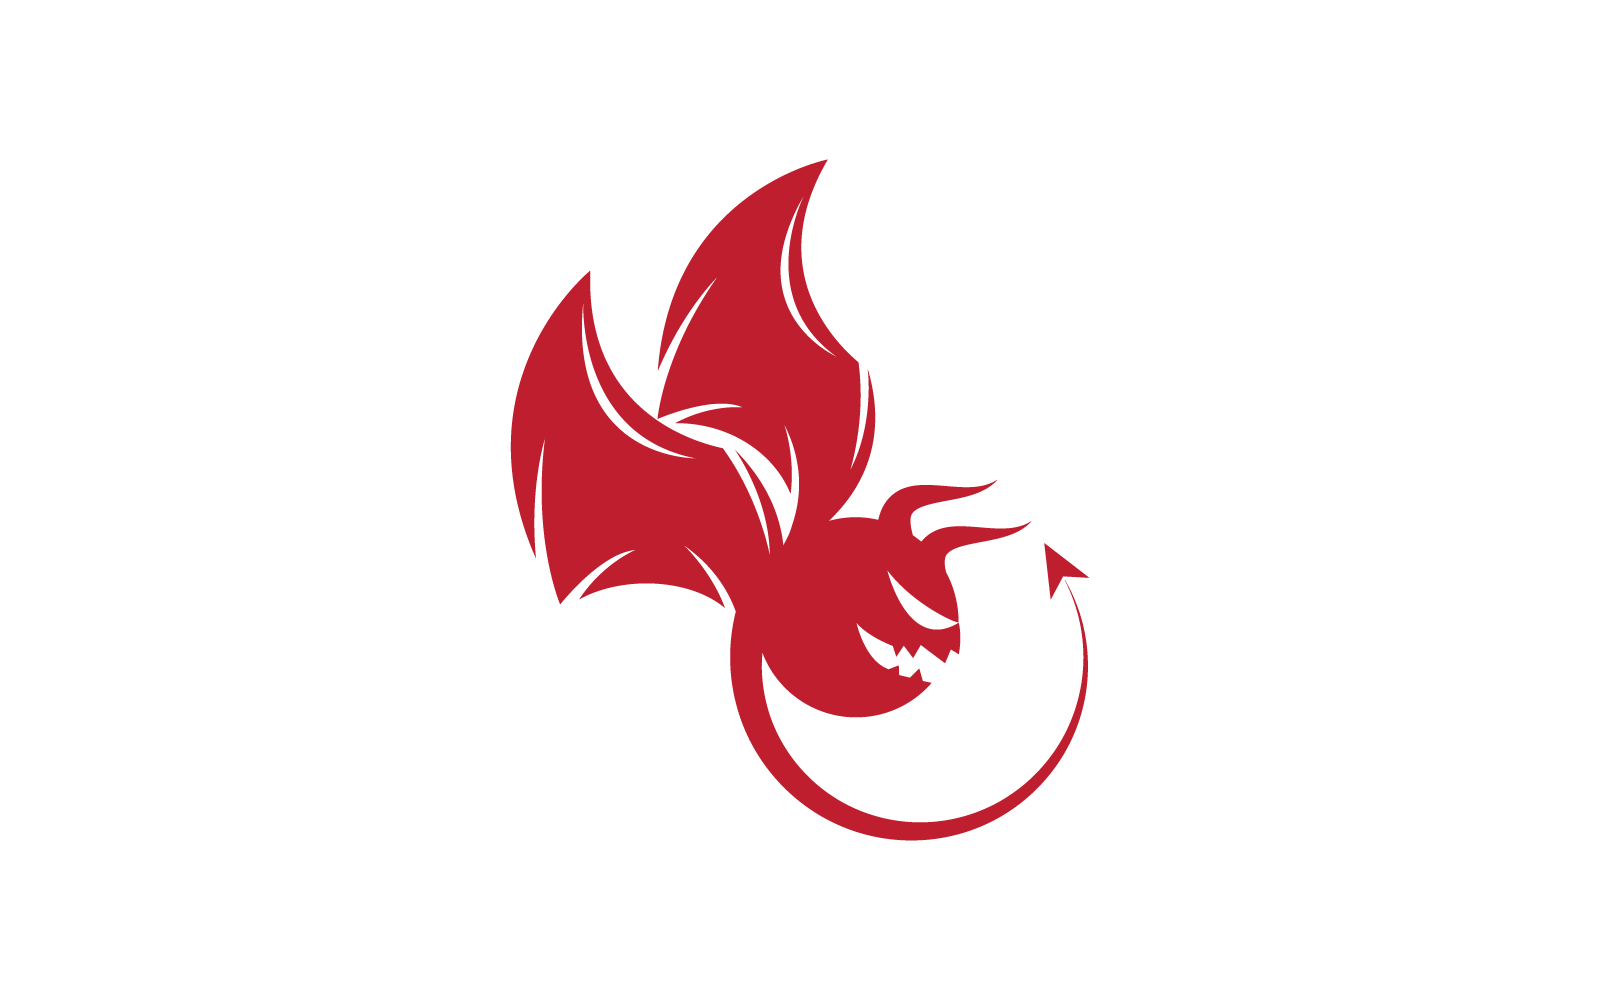 Devil logo ilustration vector design